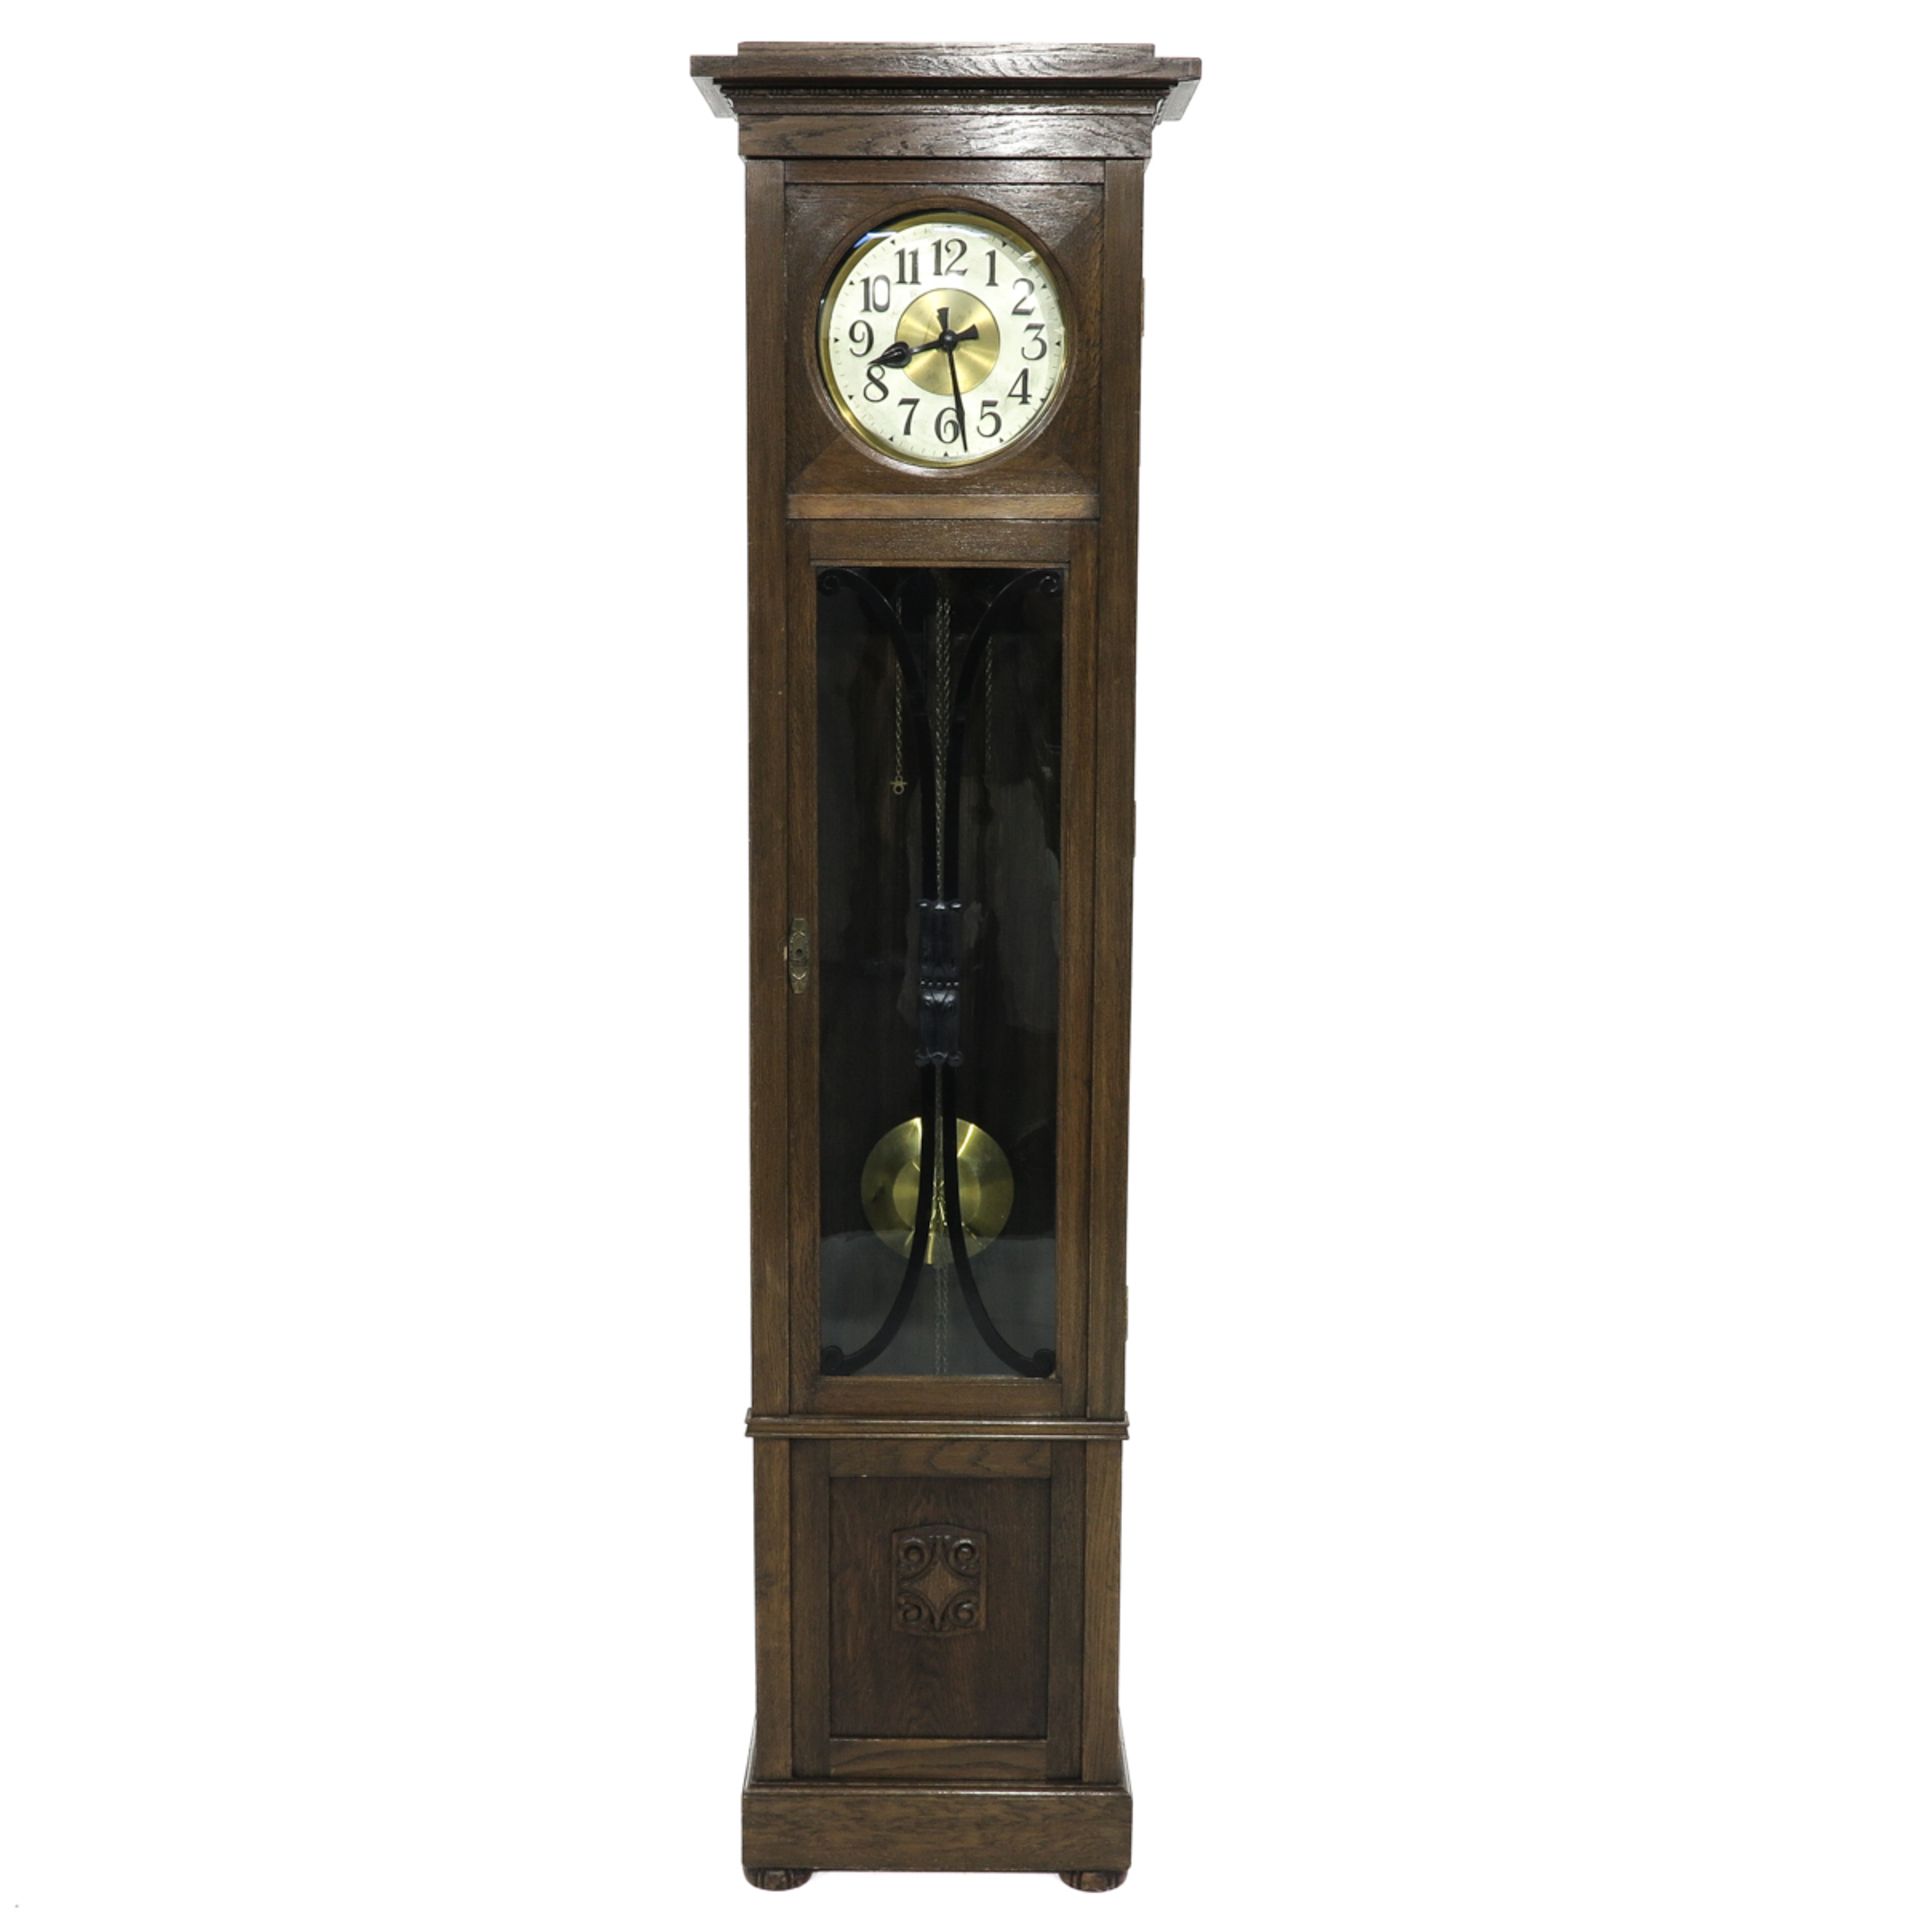 An Art Decor Period Standing Clock